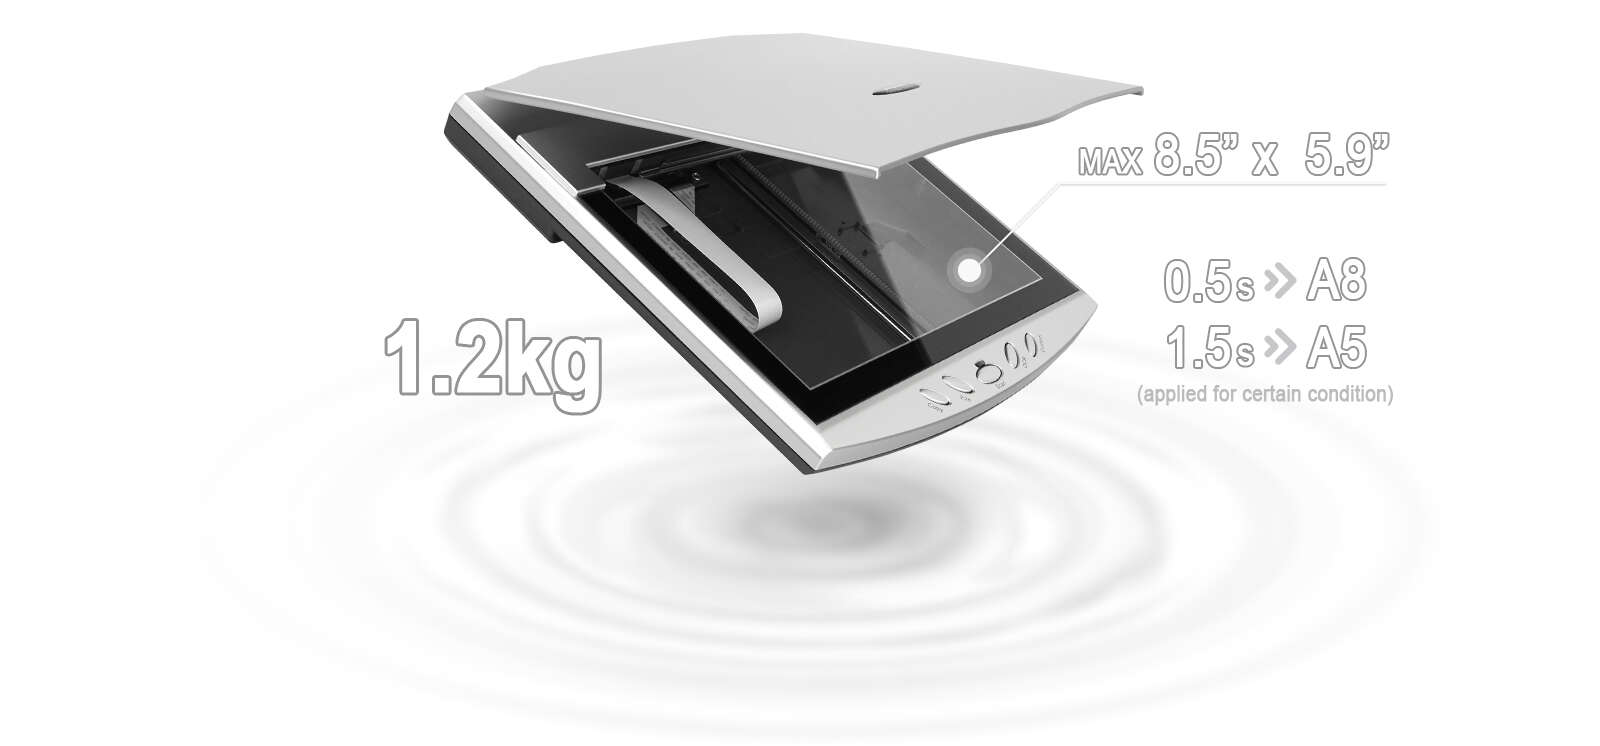 El OpticSlim 550 Plus ocupa menos espacio que un escáner de cama plana típico.
Es una opción ideal para los usuarios que tienen un espacio limitado.